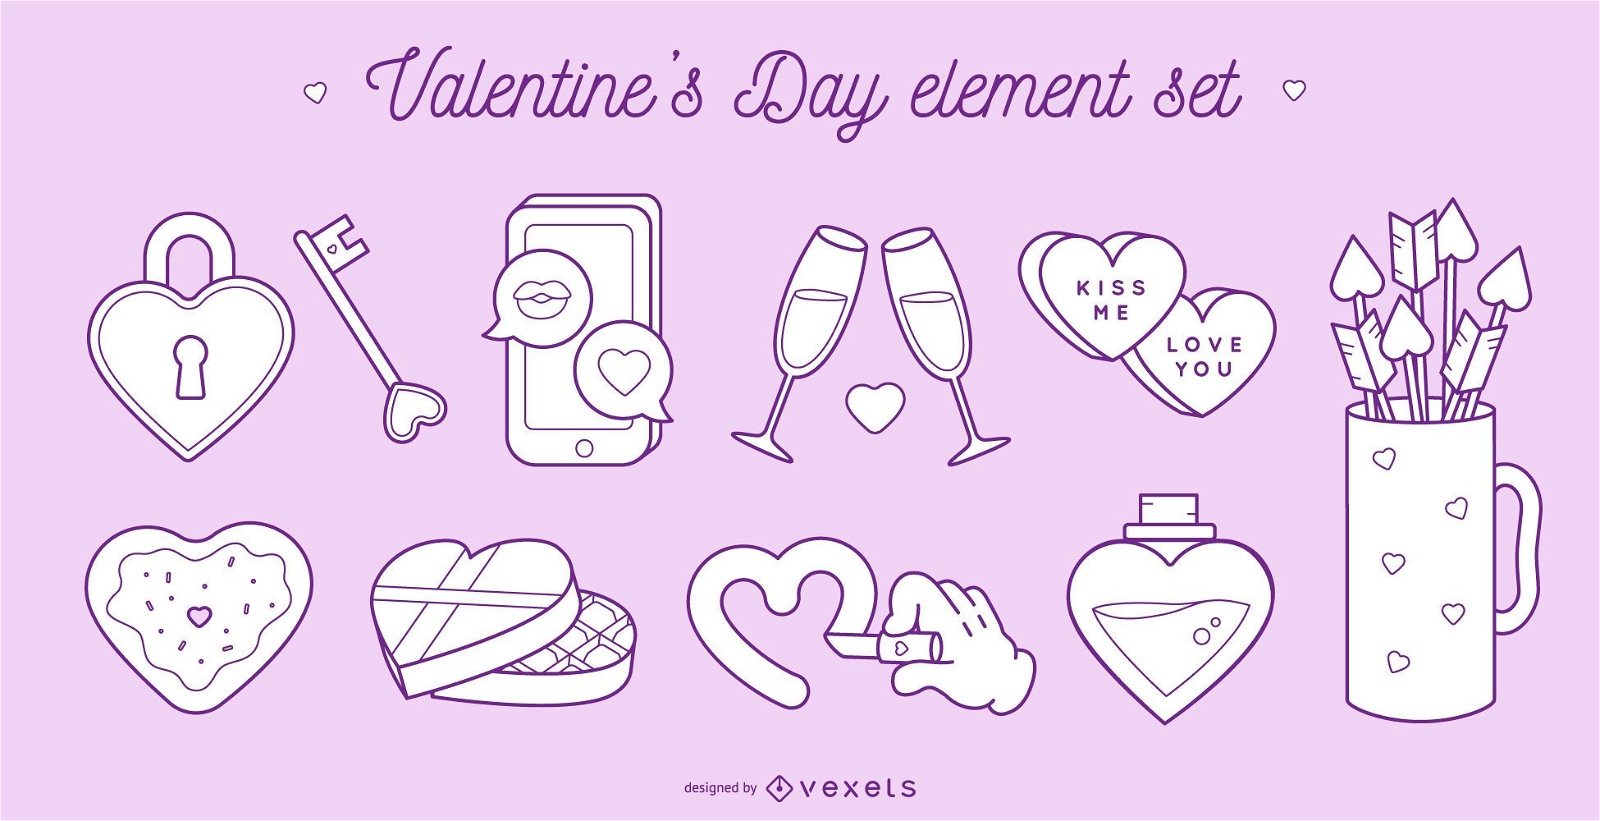 Valentine's day elements set